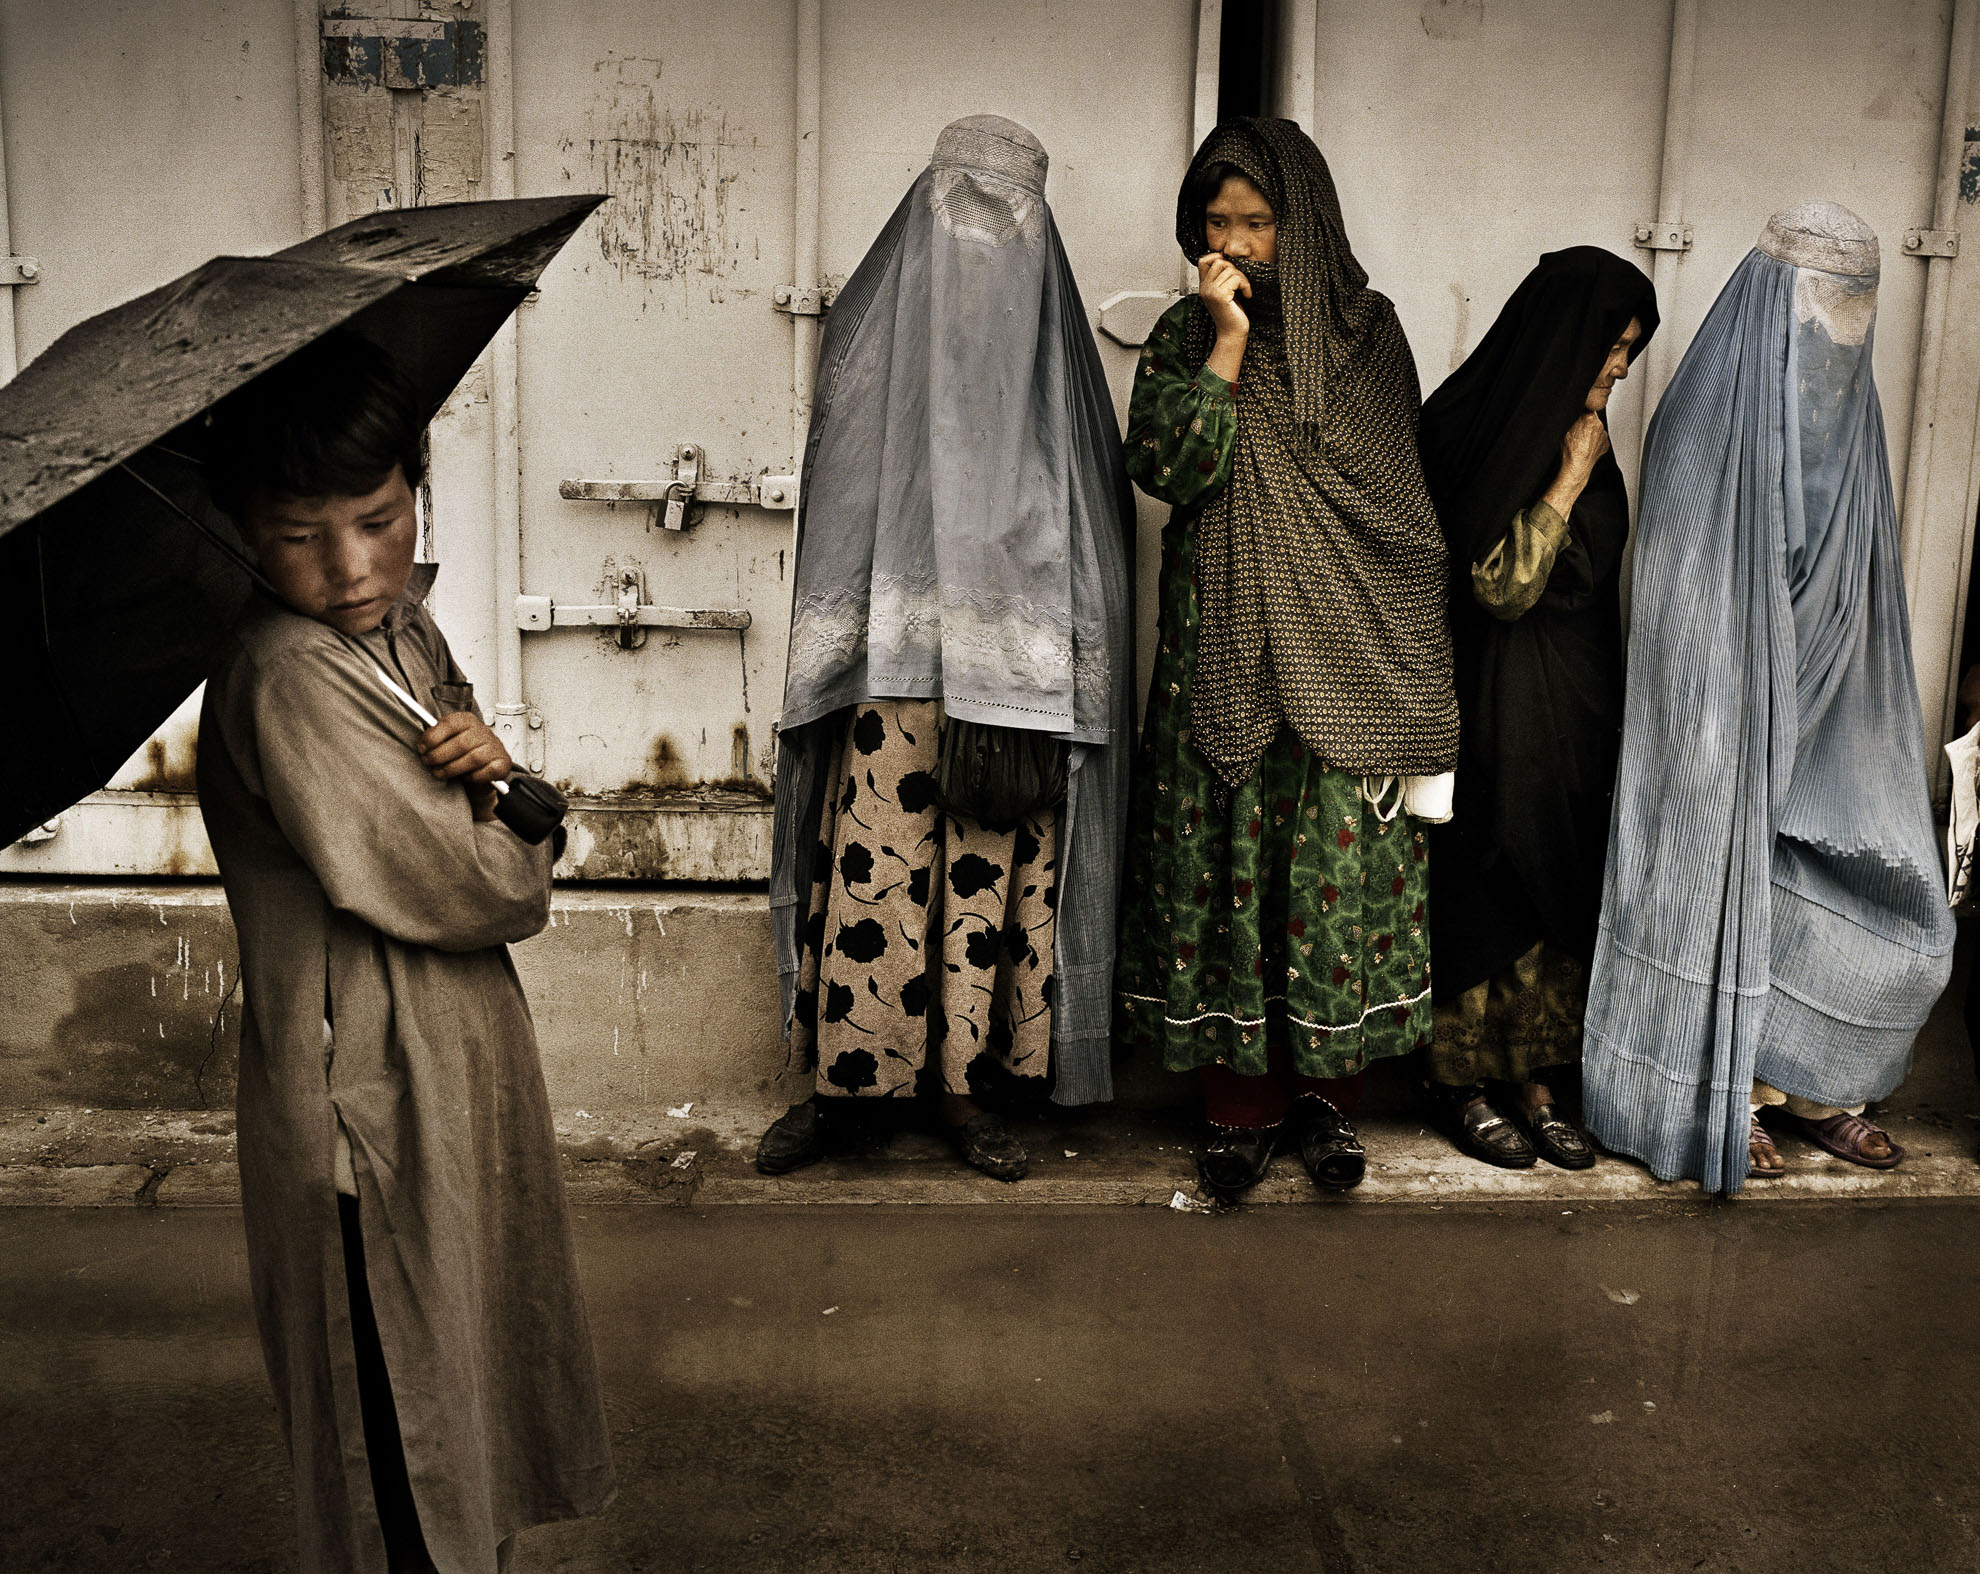 Pacientes del Hospital de Tuberculosis y Enfermedades Contagiosas de Kabul, Afganistán, hacen cola esperando la distribución de comida, en junio de 2007. Un niño de 9 años espera con su madre para ayudarle a llevar la comida de regreso a casa.